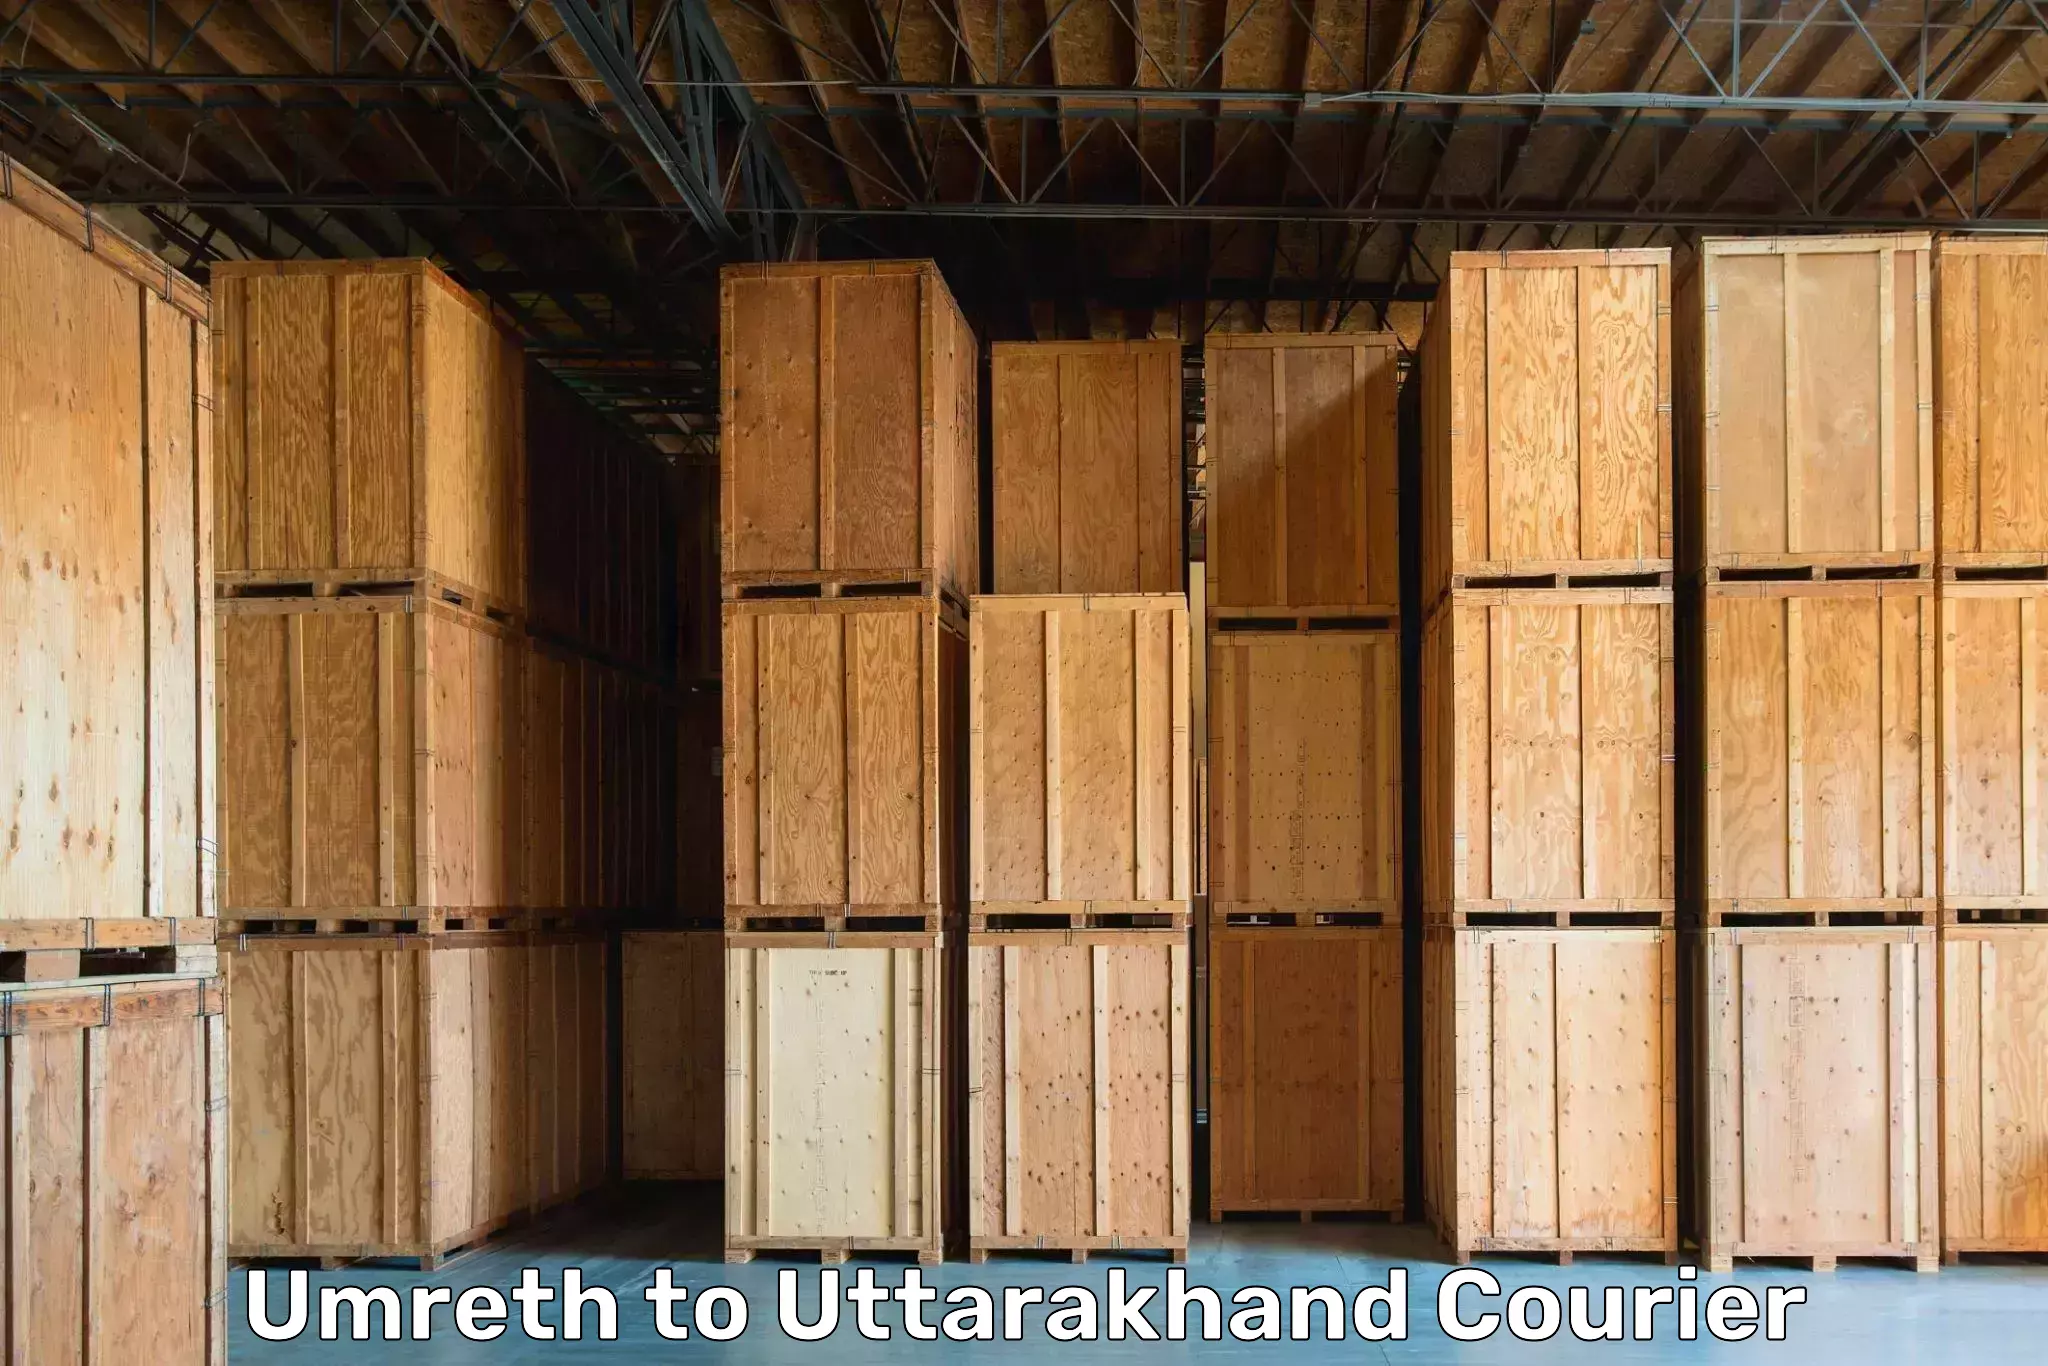 Moving and packing experts Umreth to Uttarakhand